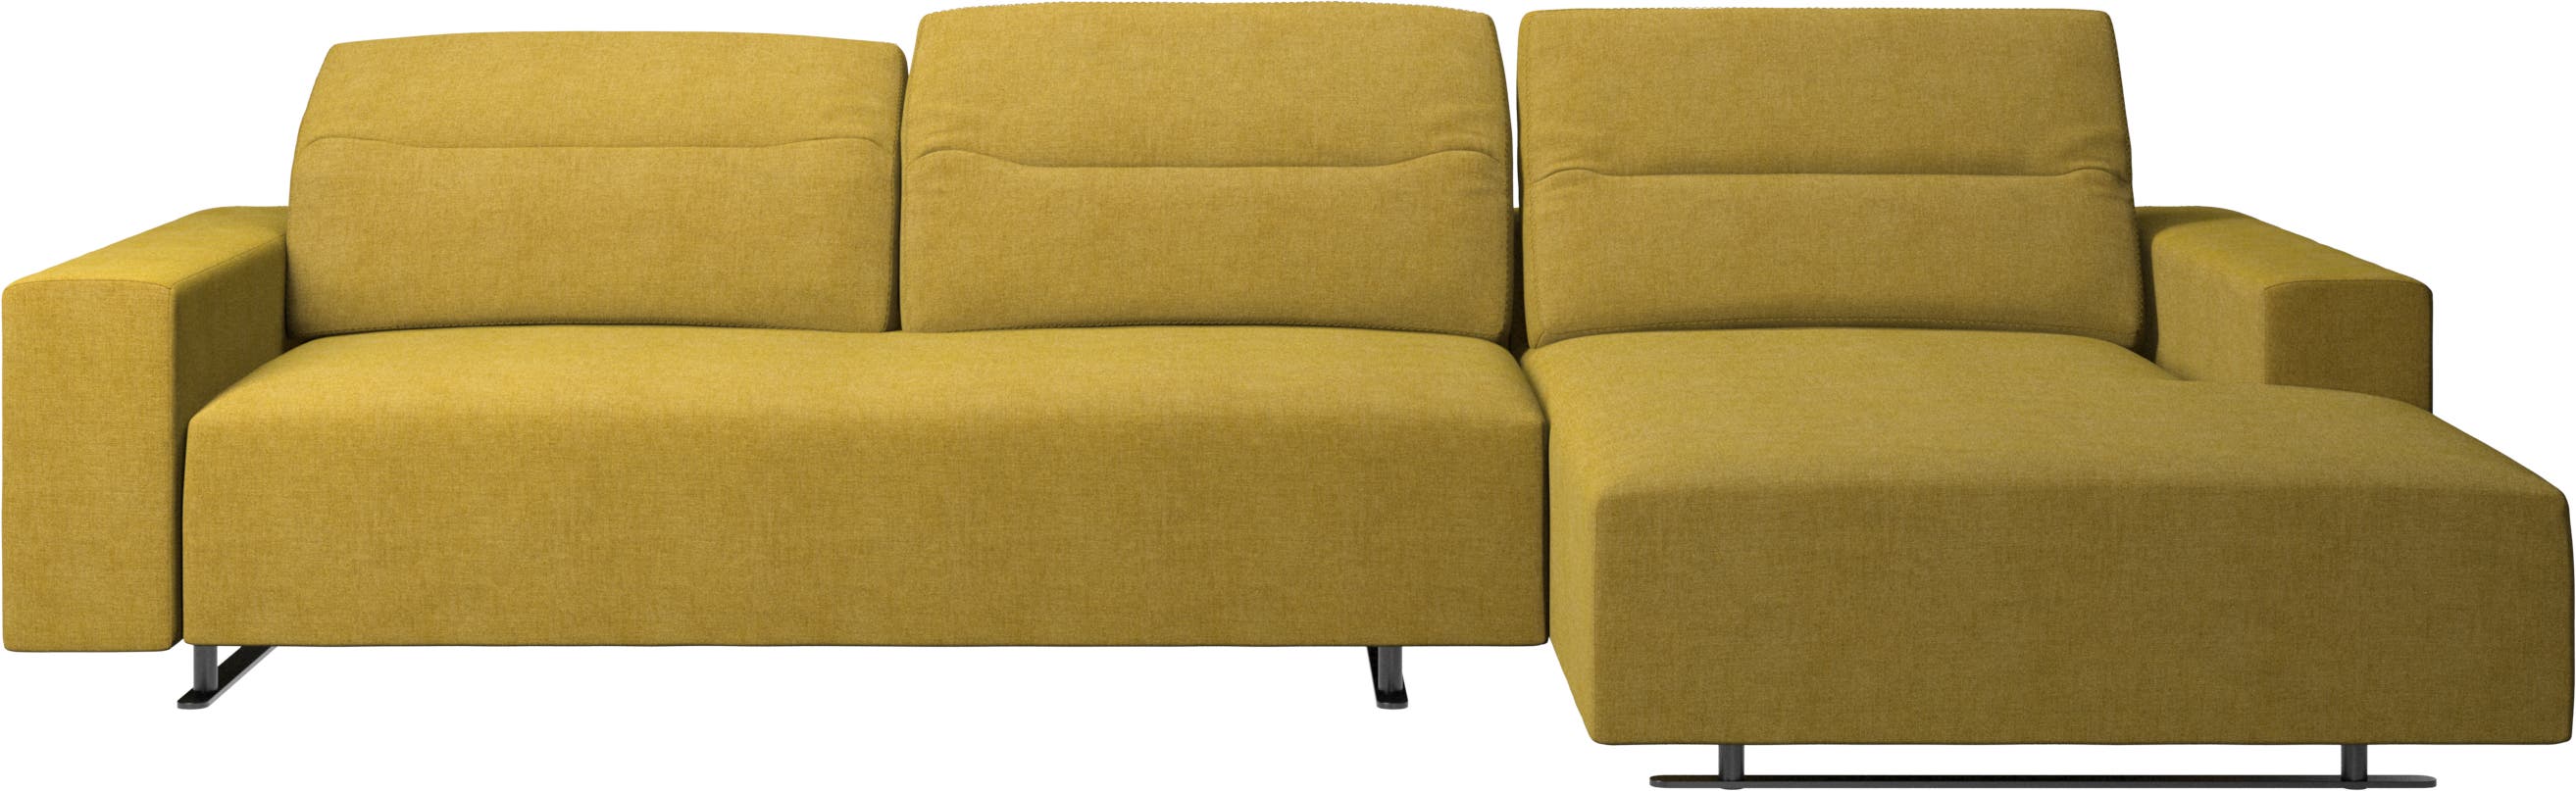 Hampton sofa med justerbar ryg, lounge modul og opbevaring højre side